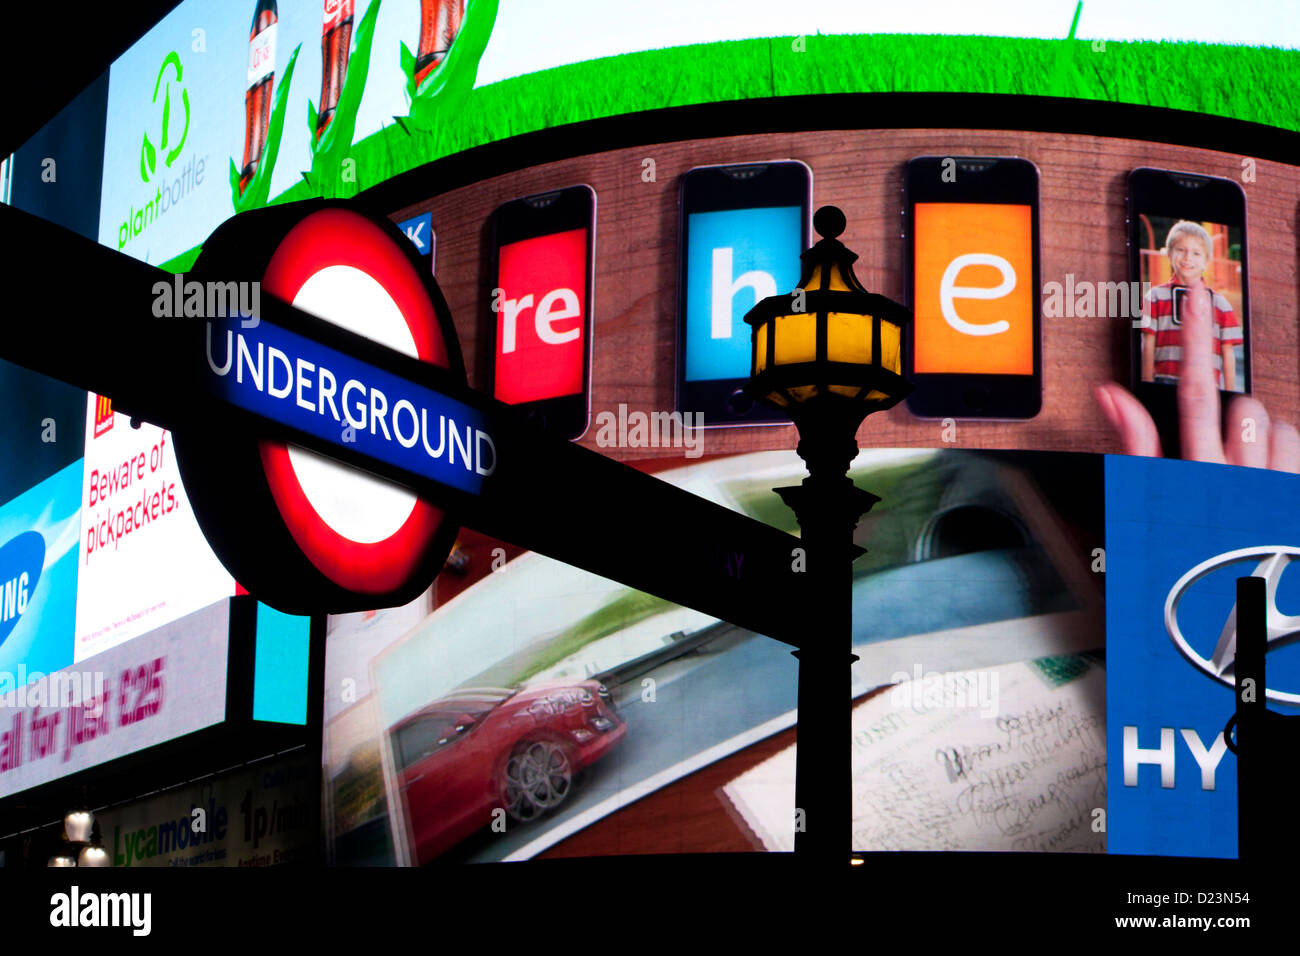 Métro de Londres de nuit avec cocarde des écrans LED de publicité derrière Picadilly Circus London England UK West End Banque D'Images